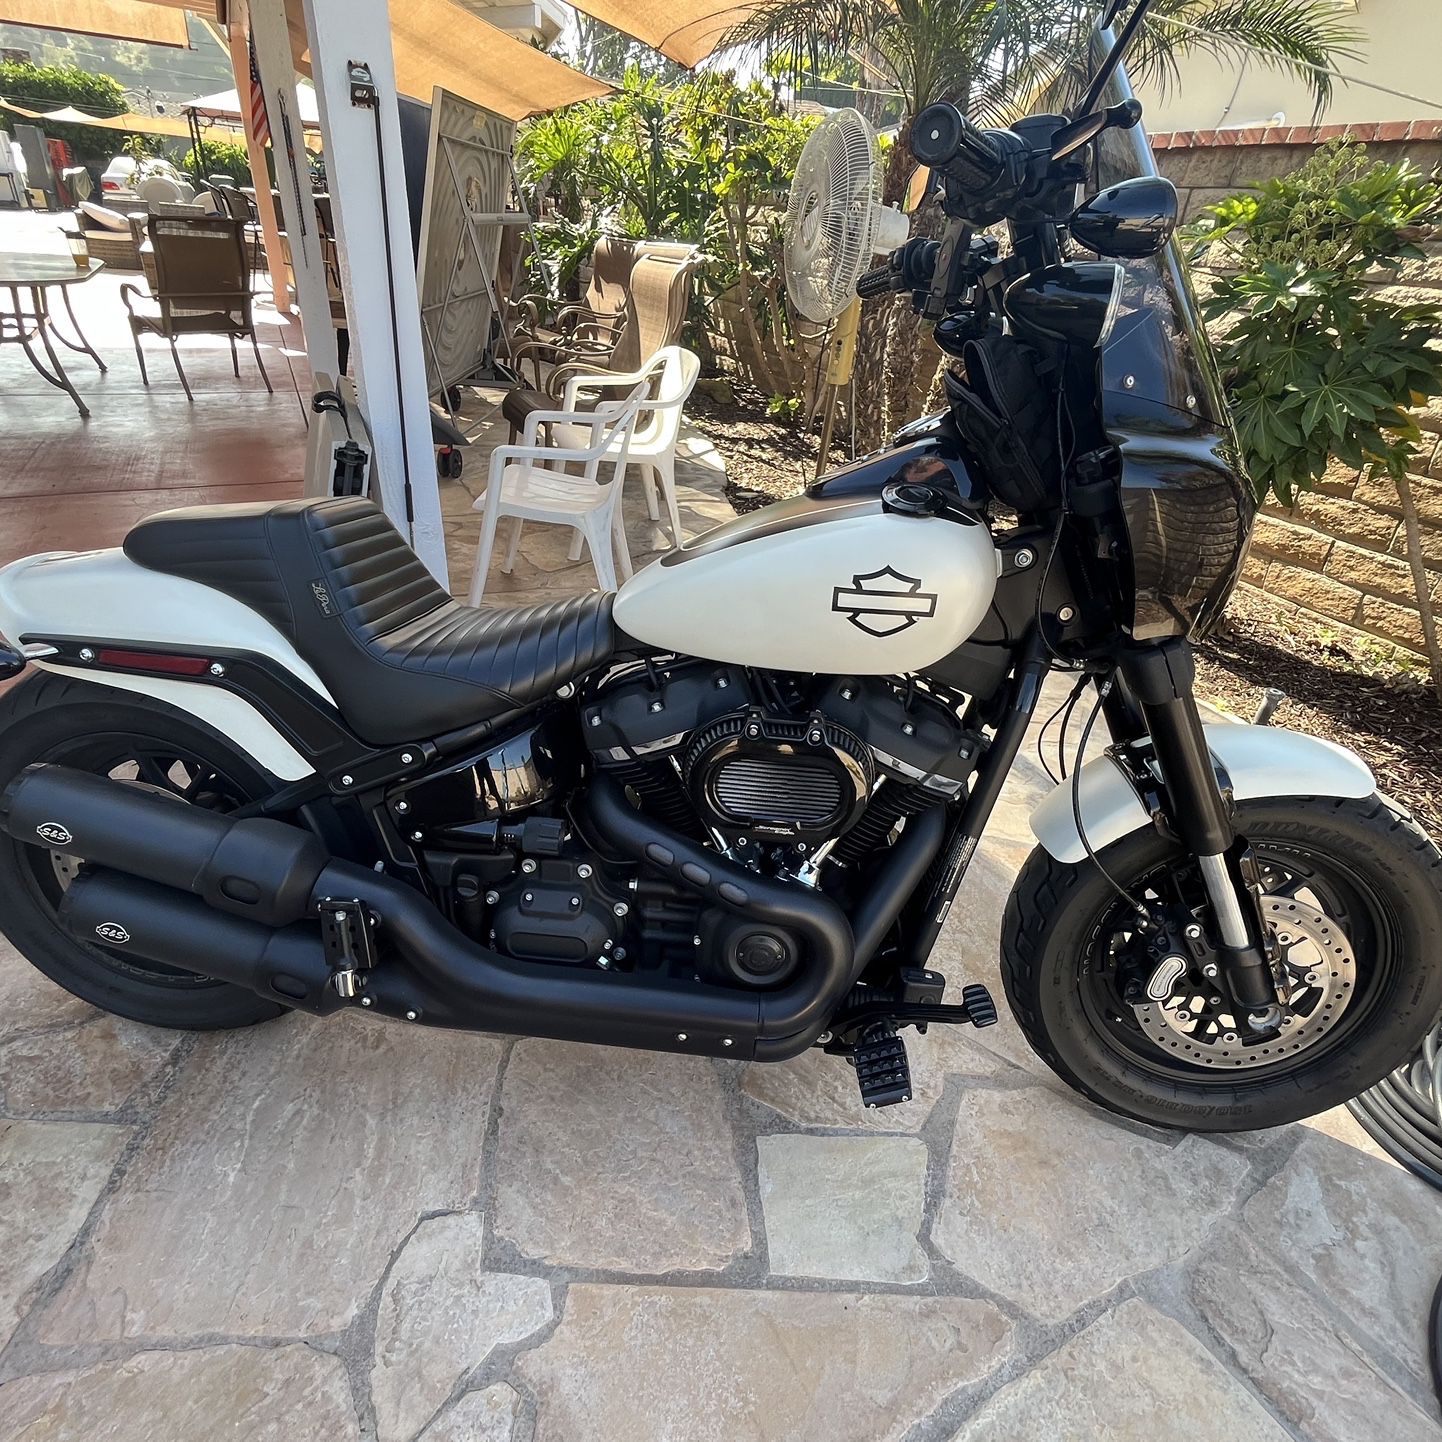 2019 Harley Davidson Fat Bob